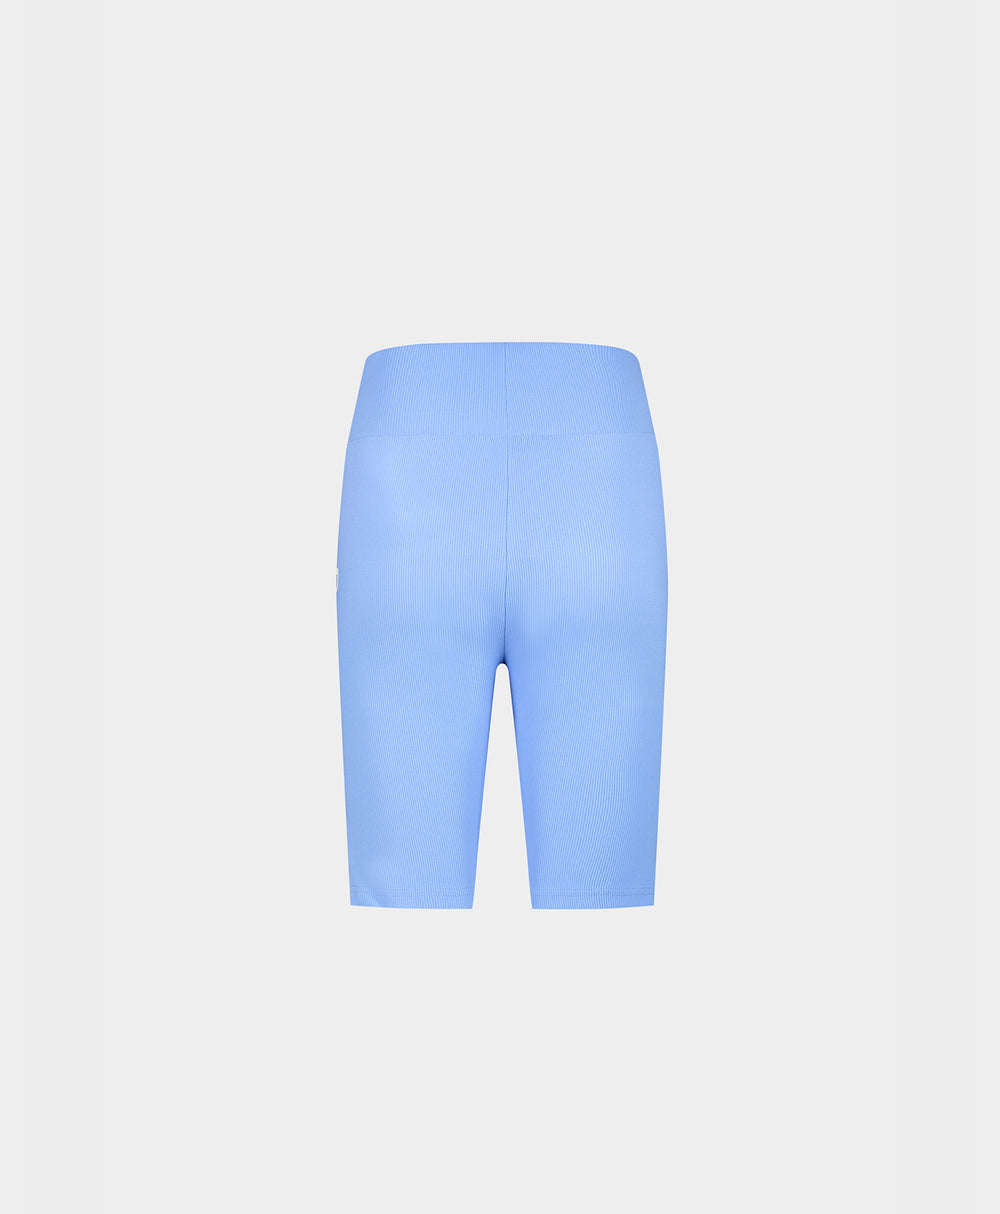 DP - Baby Blue Revin Cycle Shorts - Packshot - REar